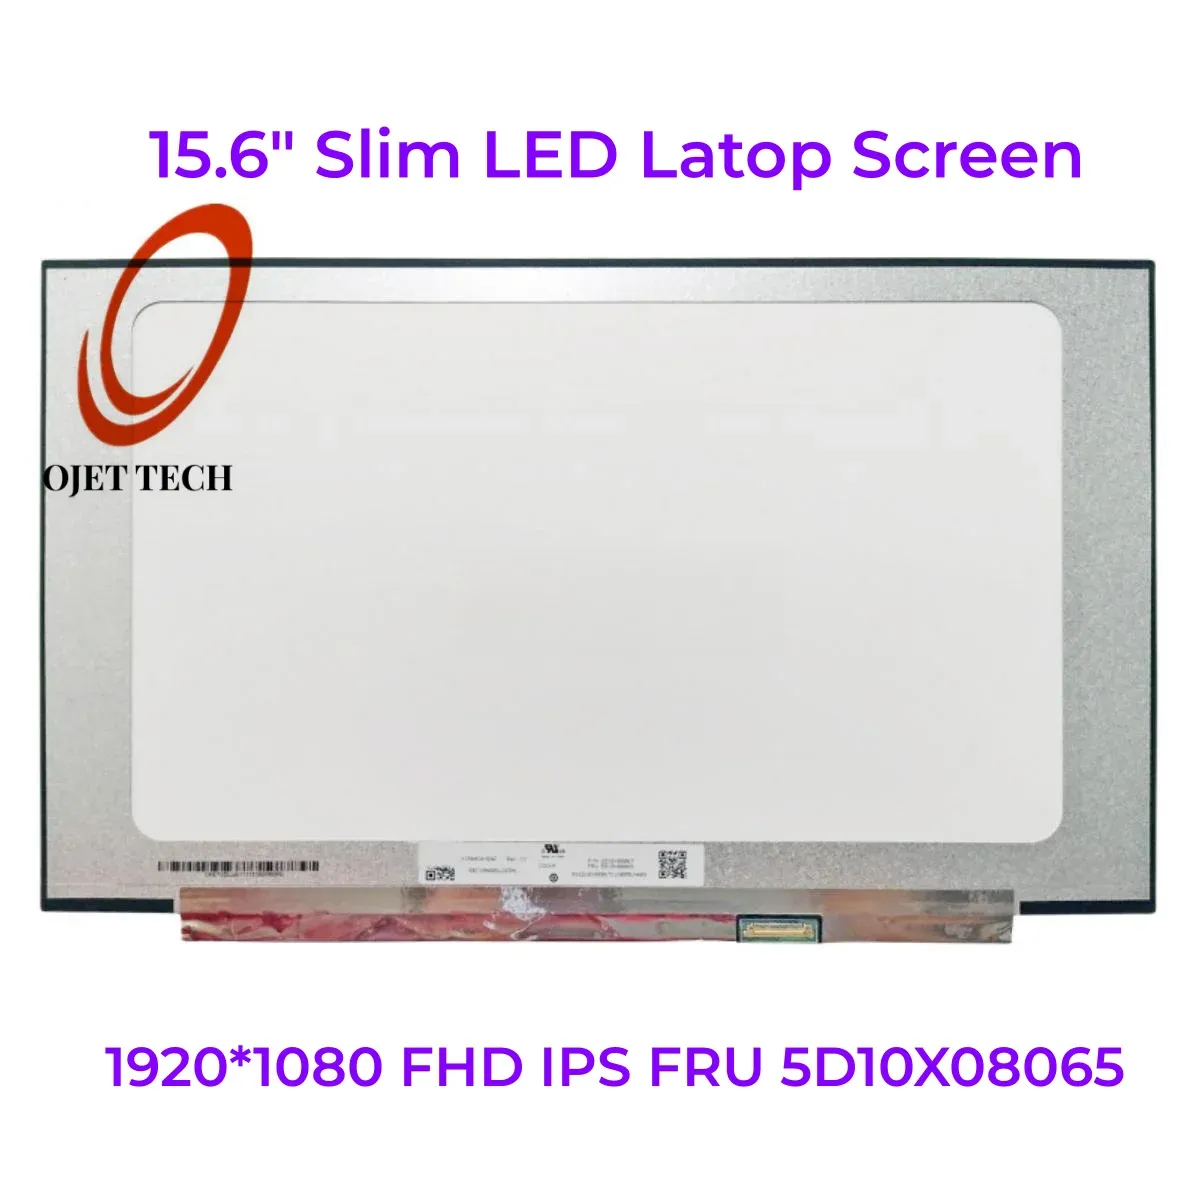 Schermata da 15.6 "Matrice LED Slim N156HCAEAC Rev C1 Visualizzazione del pannello dello schermo LCD Laptop 1920*1080 FHD IPS FRU 5D10X08065